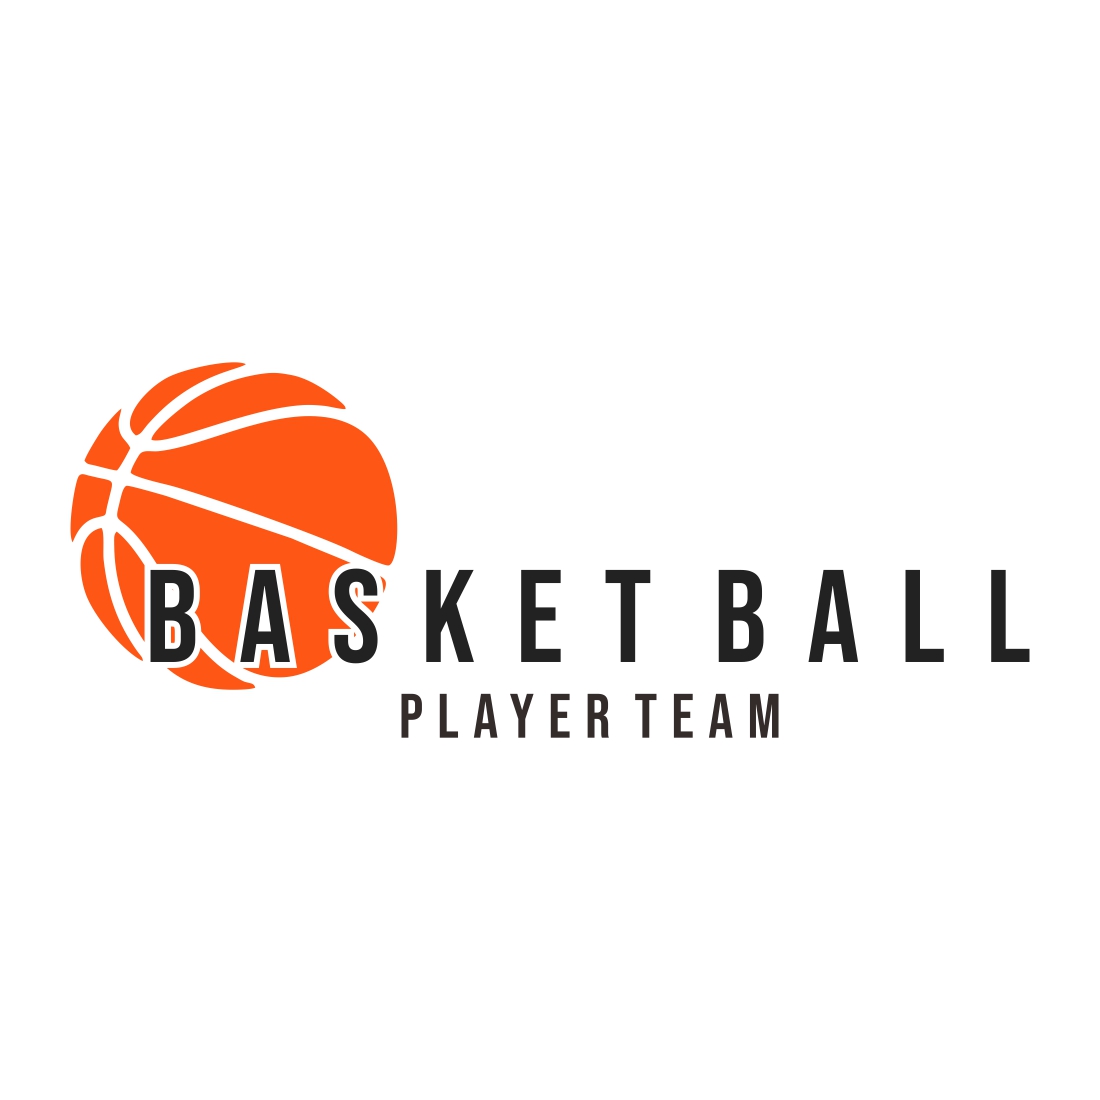 Basketball logo design template vector preview image.